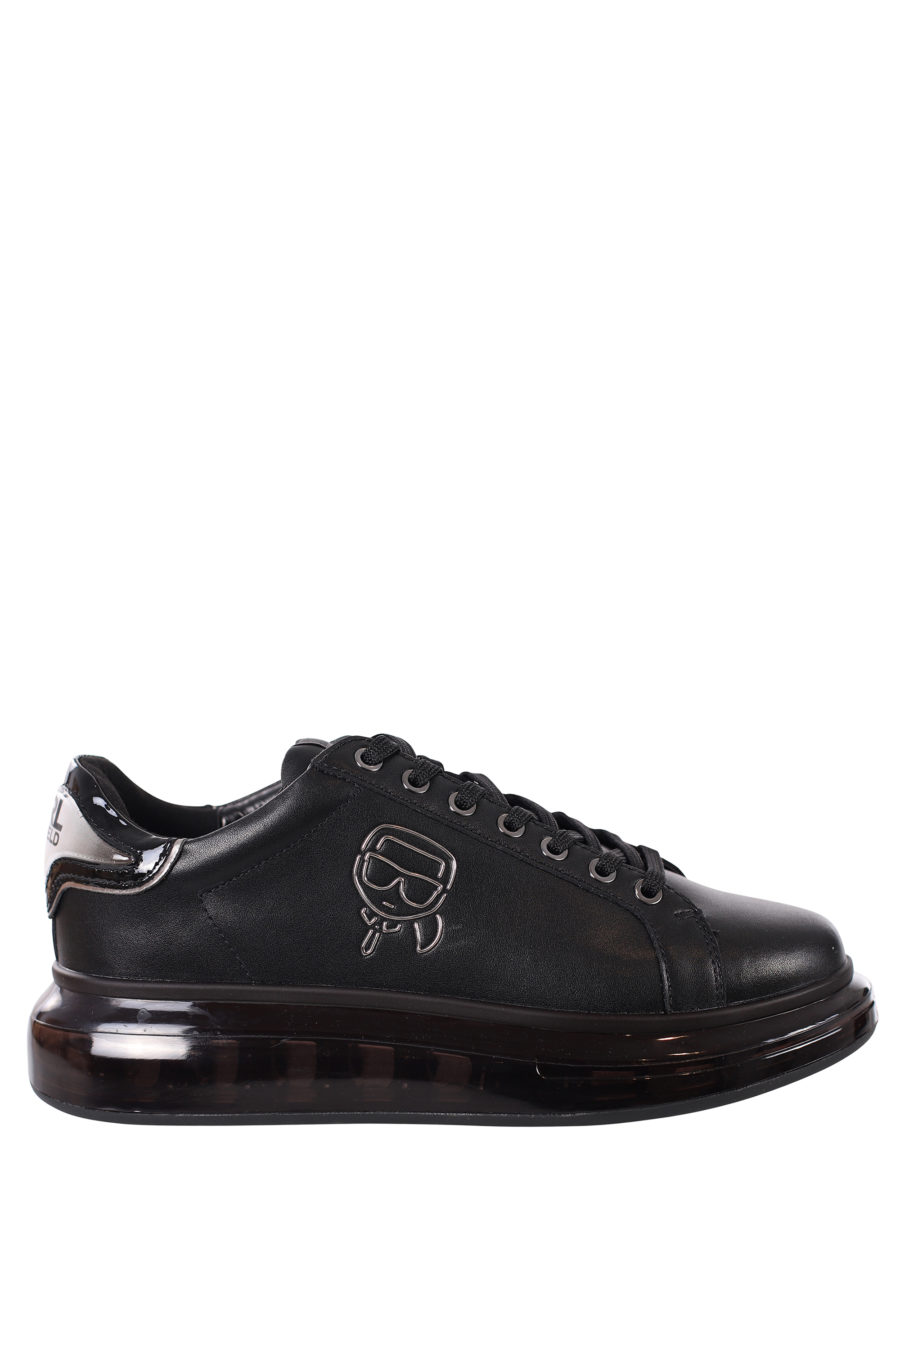 Zapatillas negras con logo silueta negro y suela negra - IMG 0413